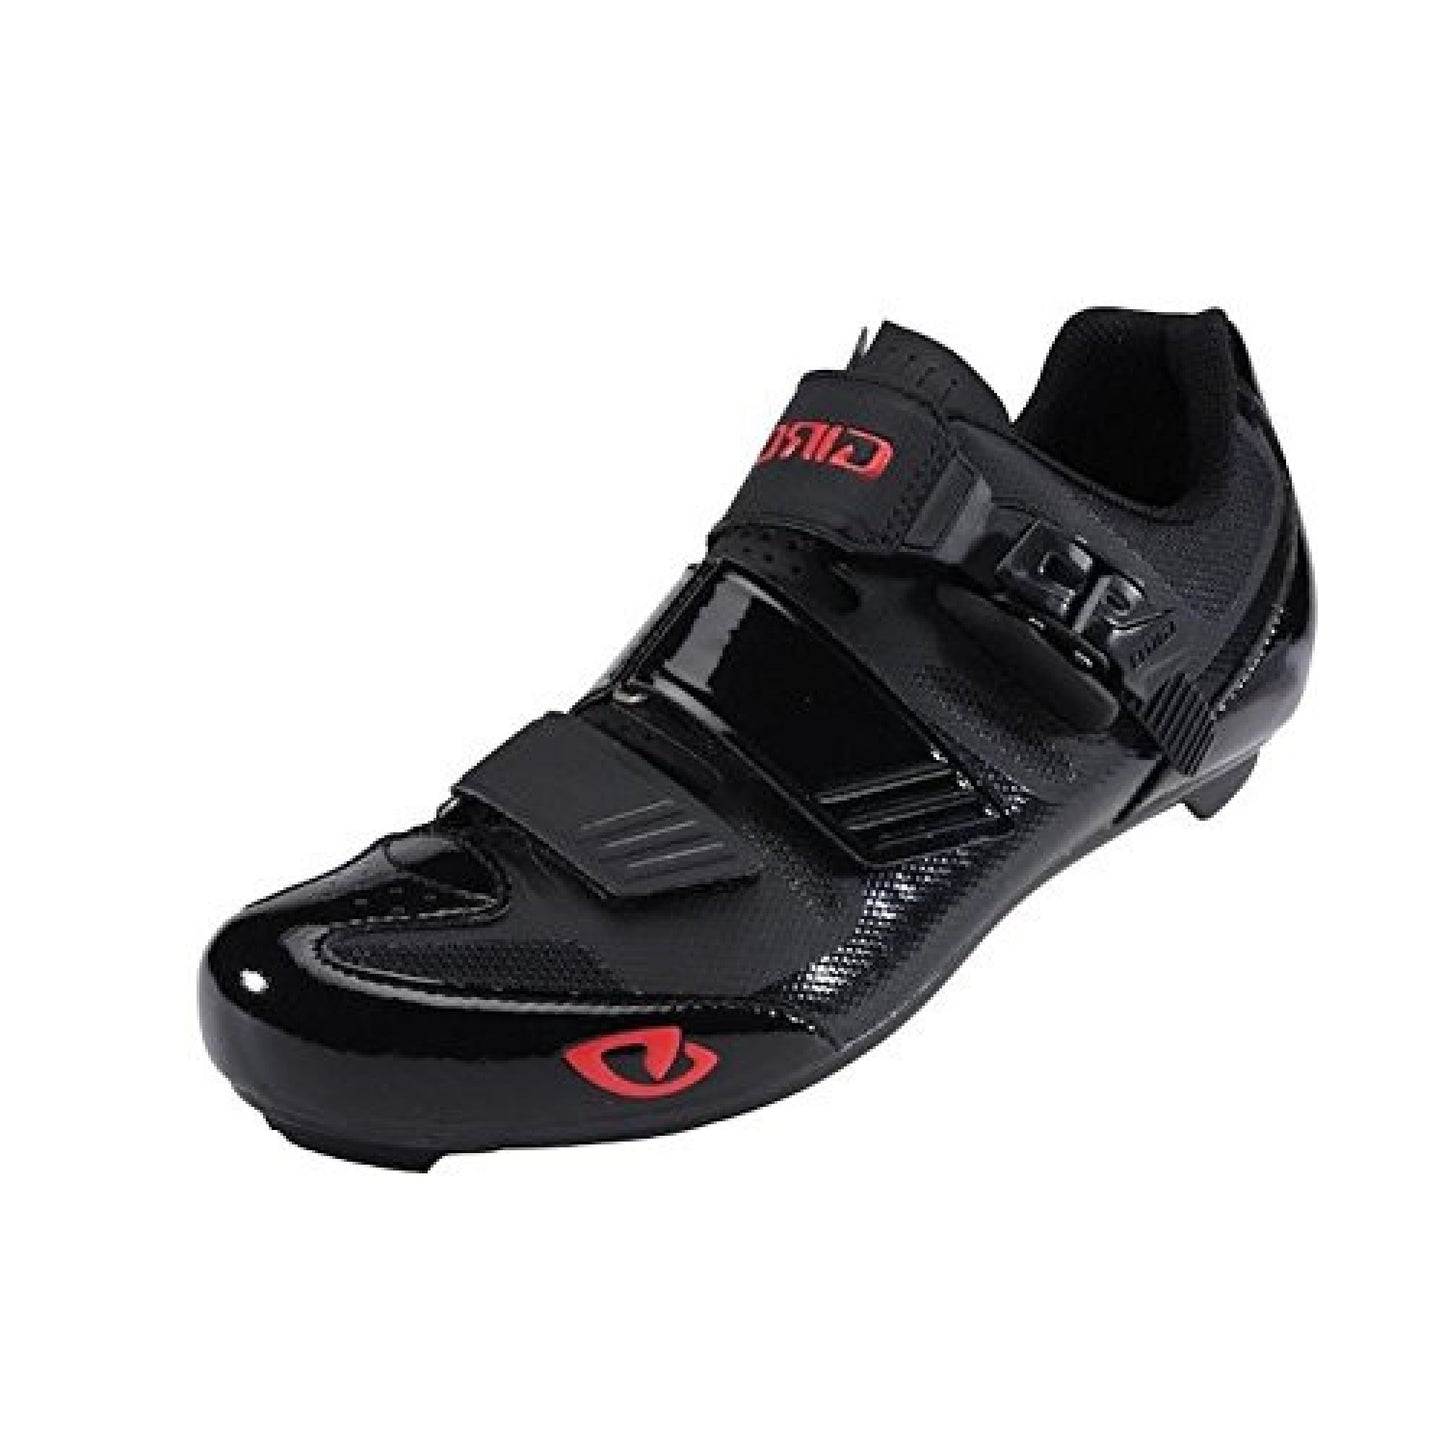 Giro APECKX II Shoe - Openbox Black Bright Red Bike Shoes